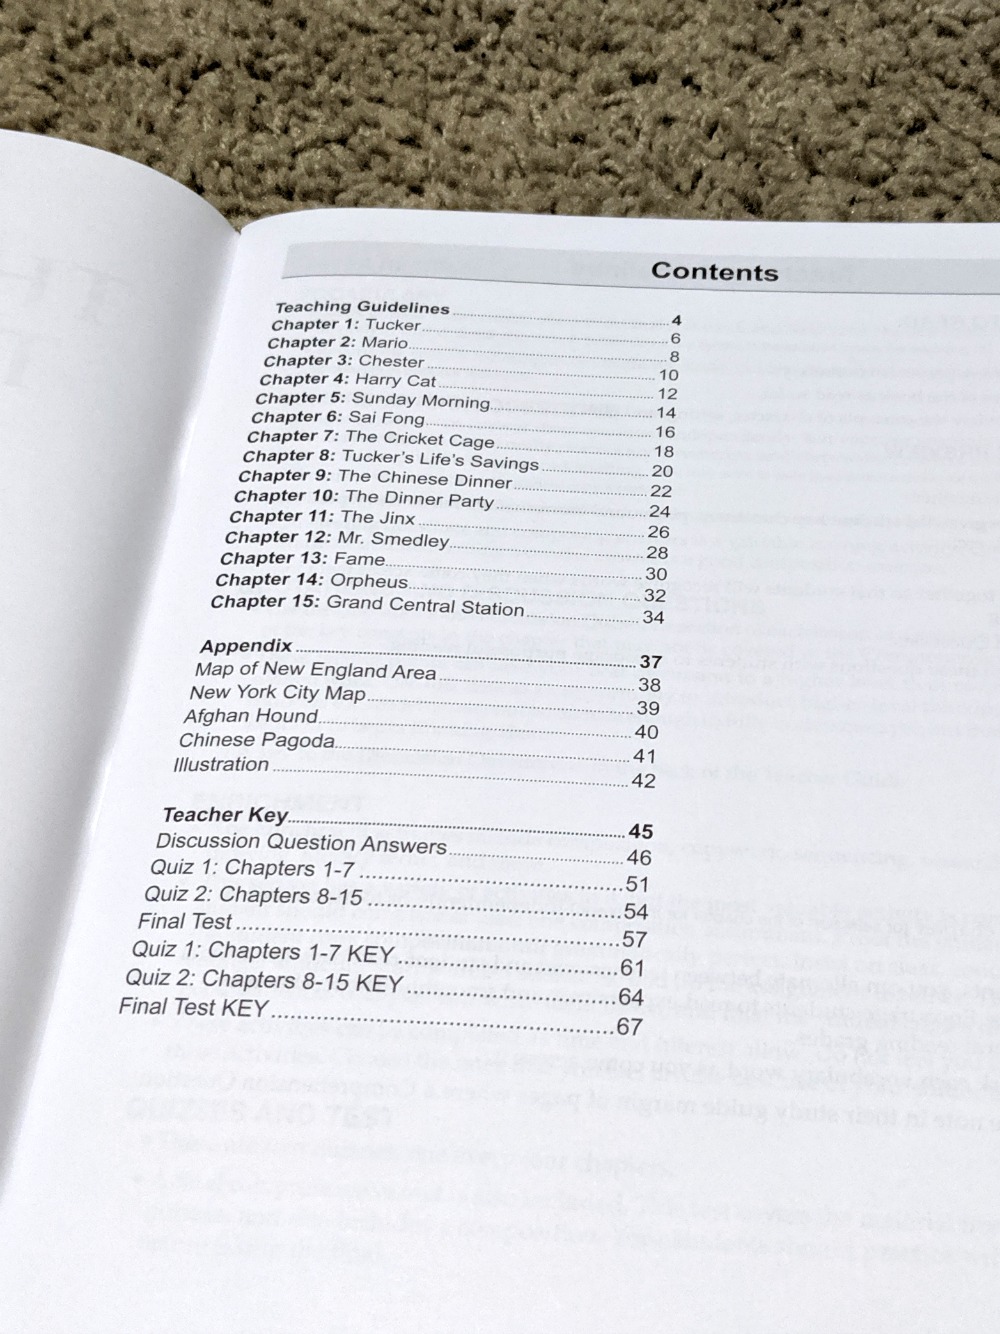 Memoria Press Fourth Grade Literature Guide Set Teacher Guide Table of Contents